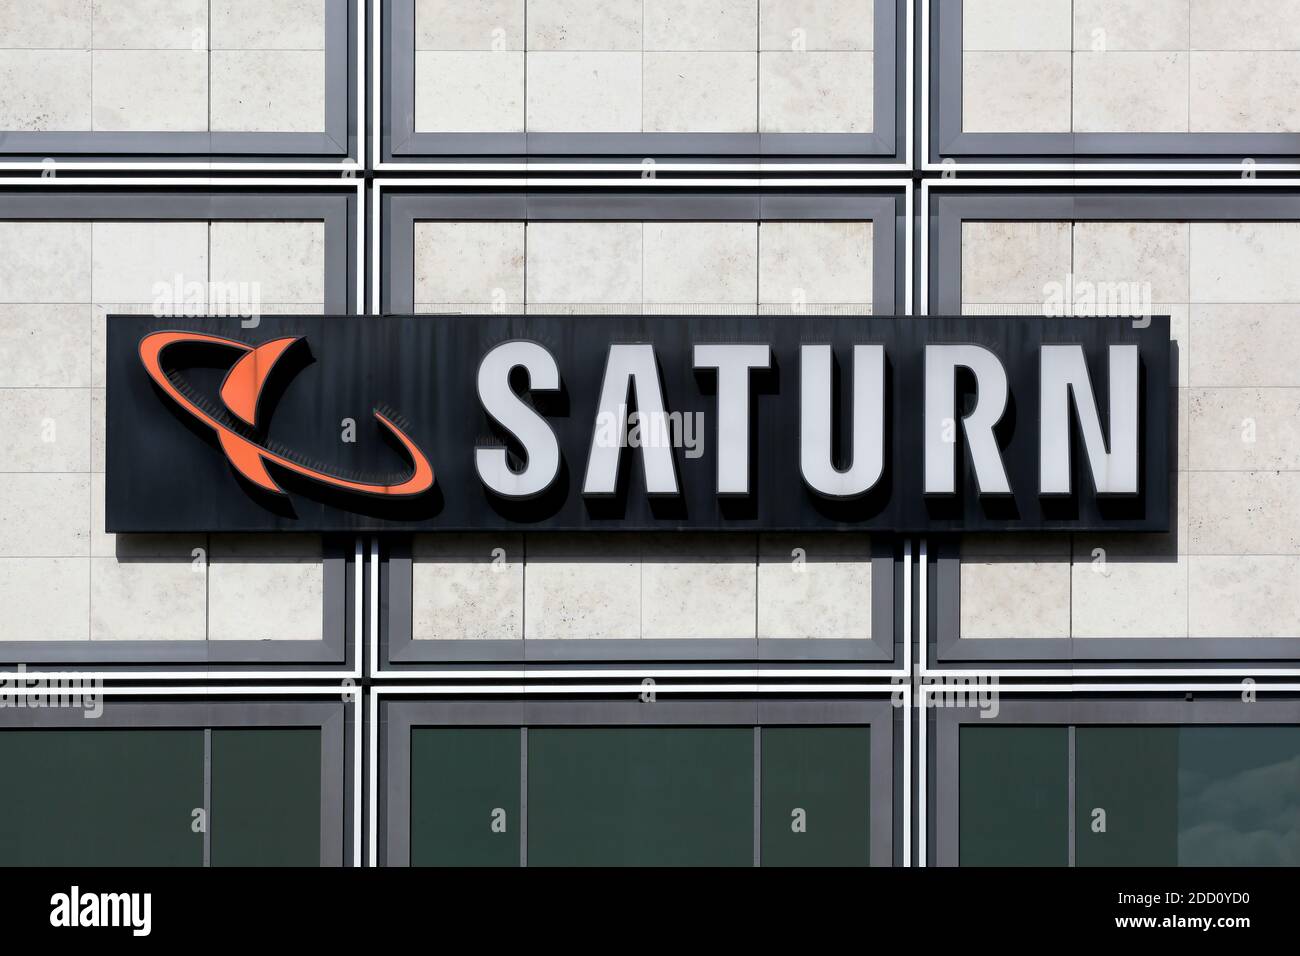 Berlin, Allemagne - 12 juillet 2020 : logo du magasin Saturn sur un mur. Saturn est une chaîne allemande de magasins d'électronique en Allemagne et au Luxembourg Banque D'Images